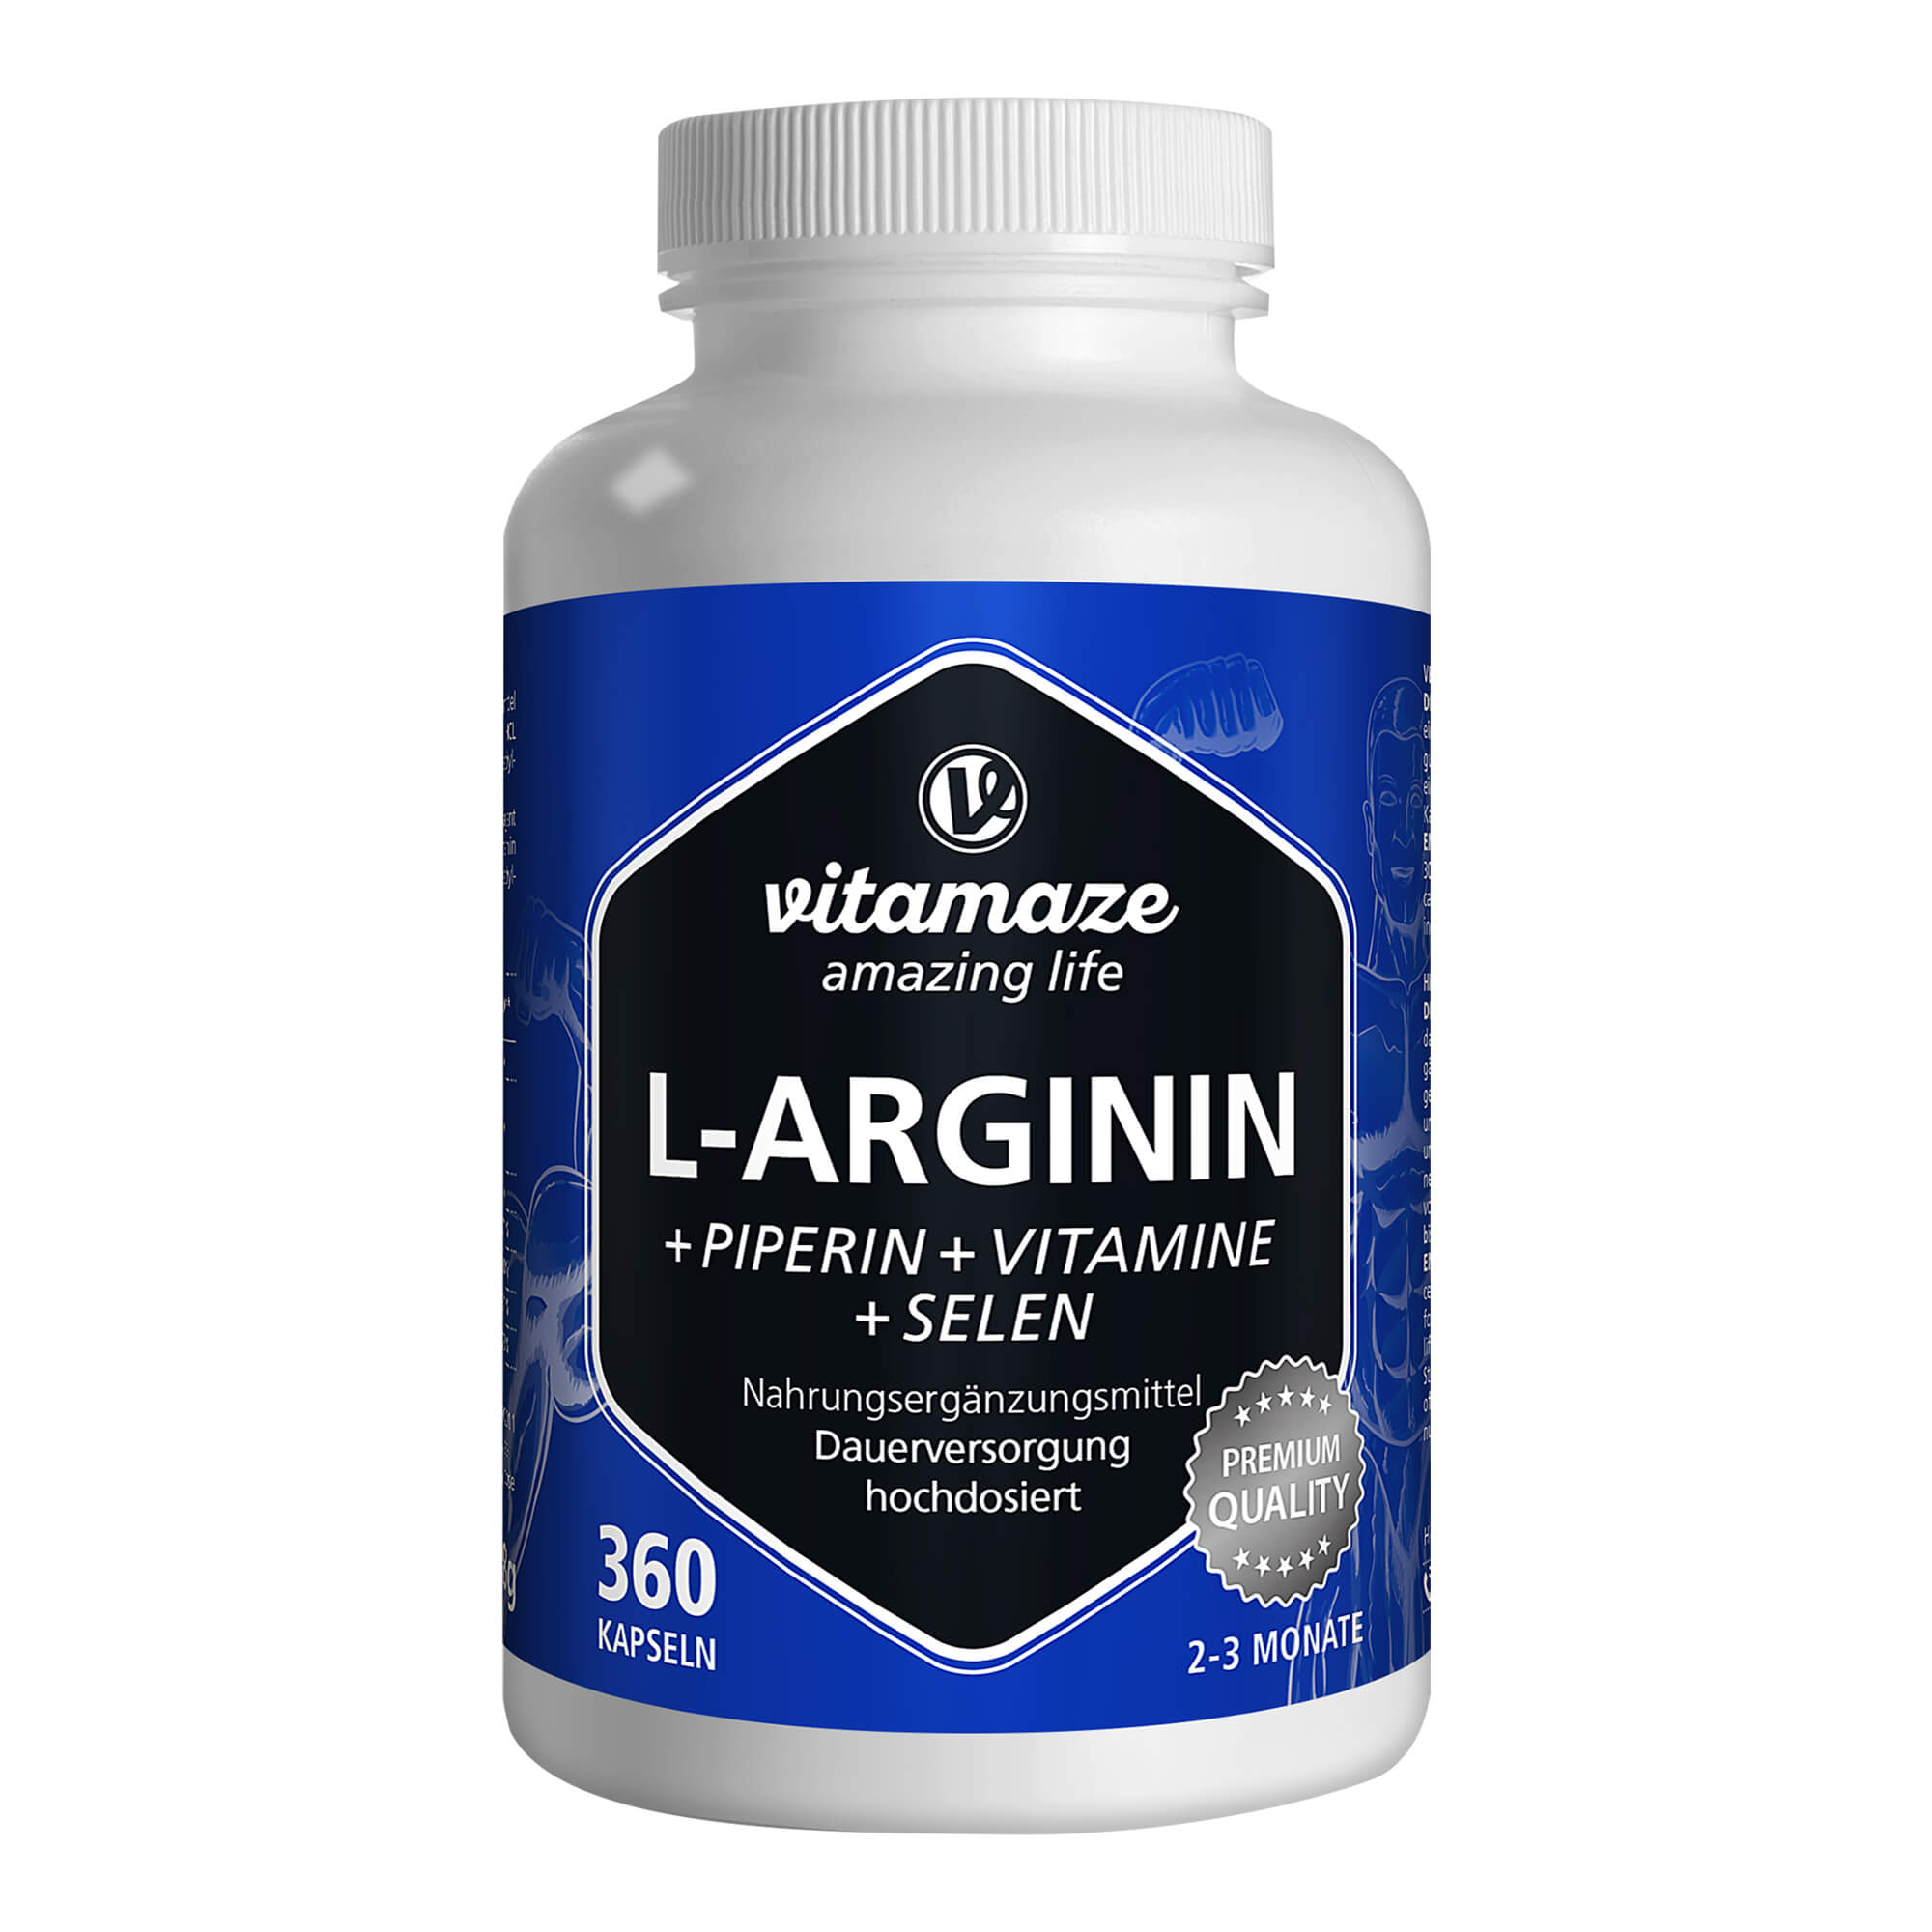 Nahrungsergänzungsmittel zur optimalen L-Arginin-Aufnahme.